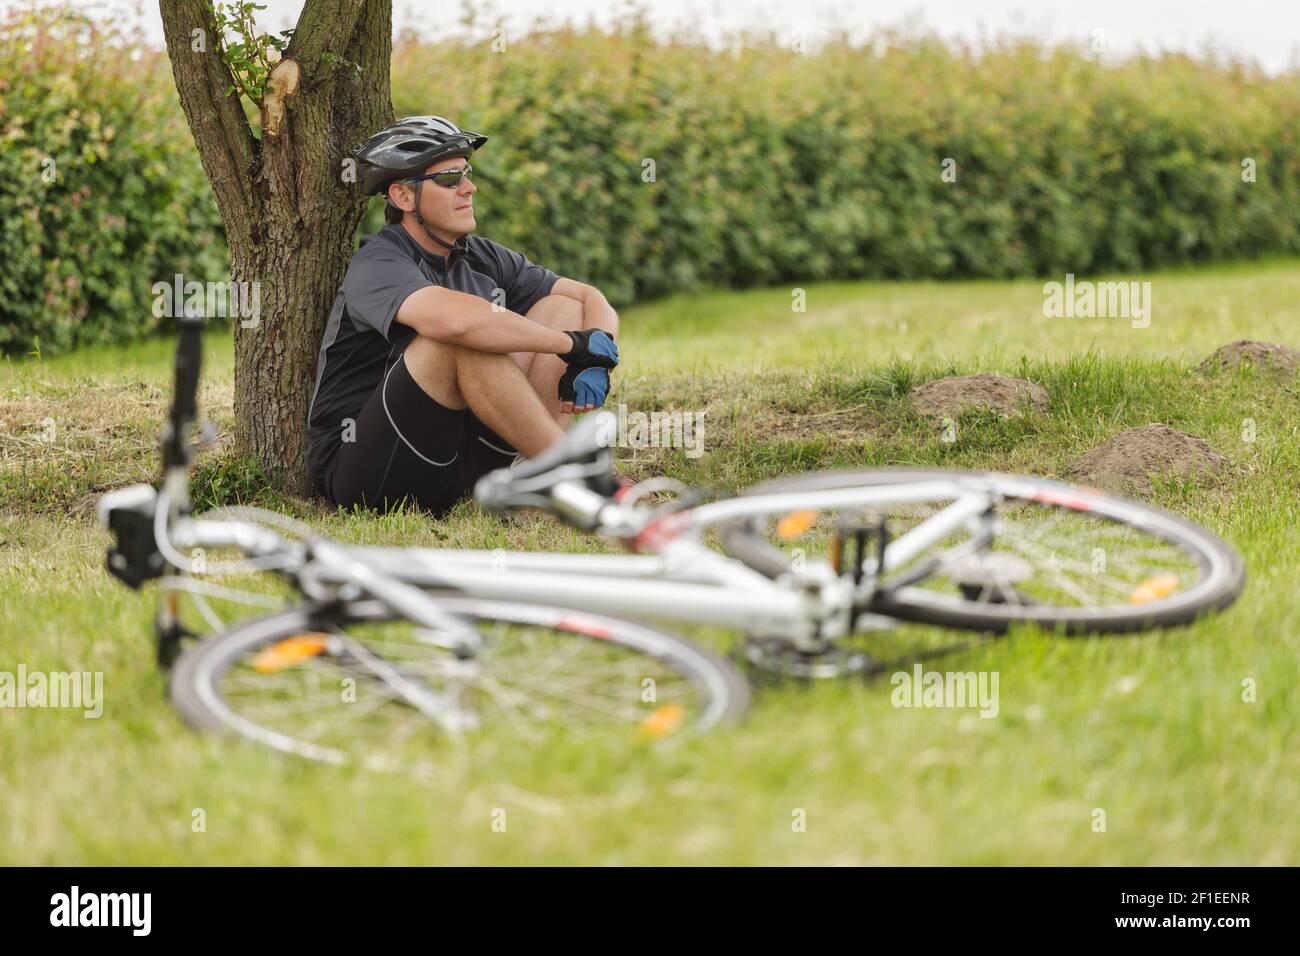 Radfahrer ruht auf einer Wiese unter einem Baum, unscharfes Fahrrad im Vordergrund sichtbar Stockfoto